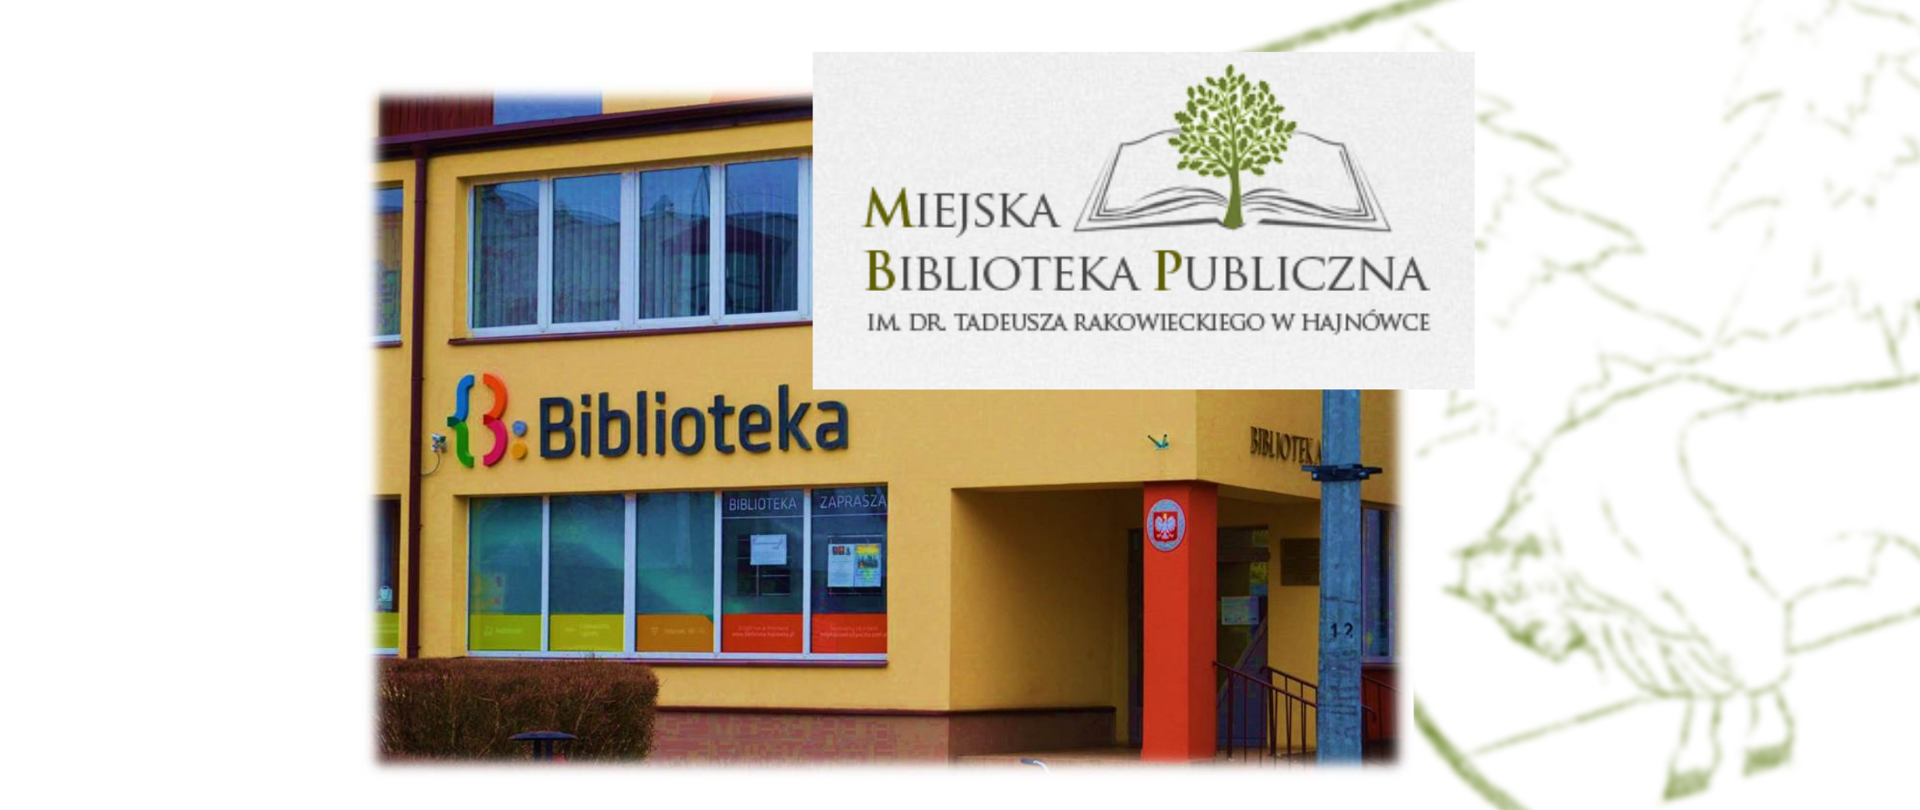 Miejska Biblioteka Publiczna im. dr Tadeusza Rakowieckiego w Hajnówce - budynek biblioteki